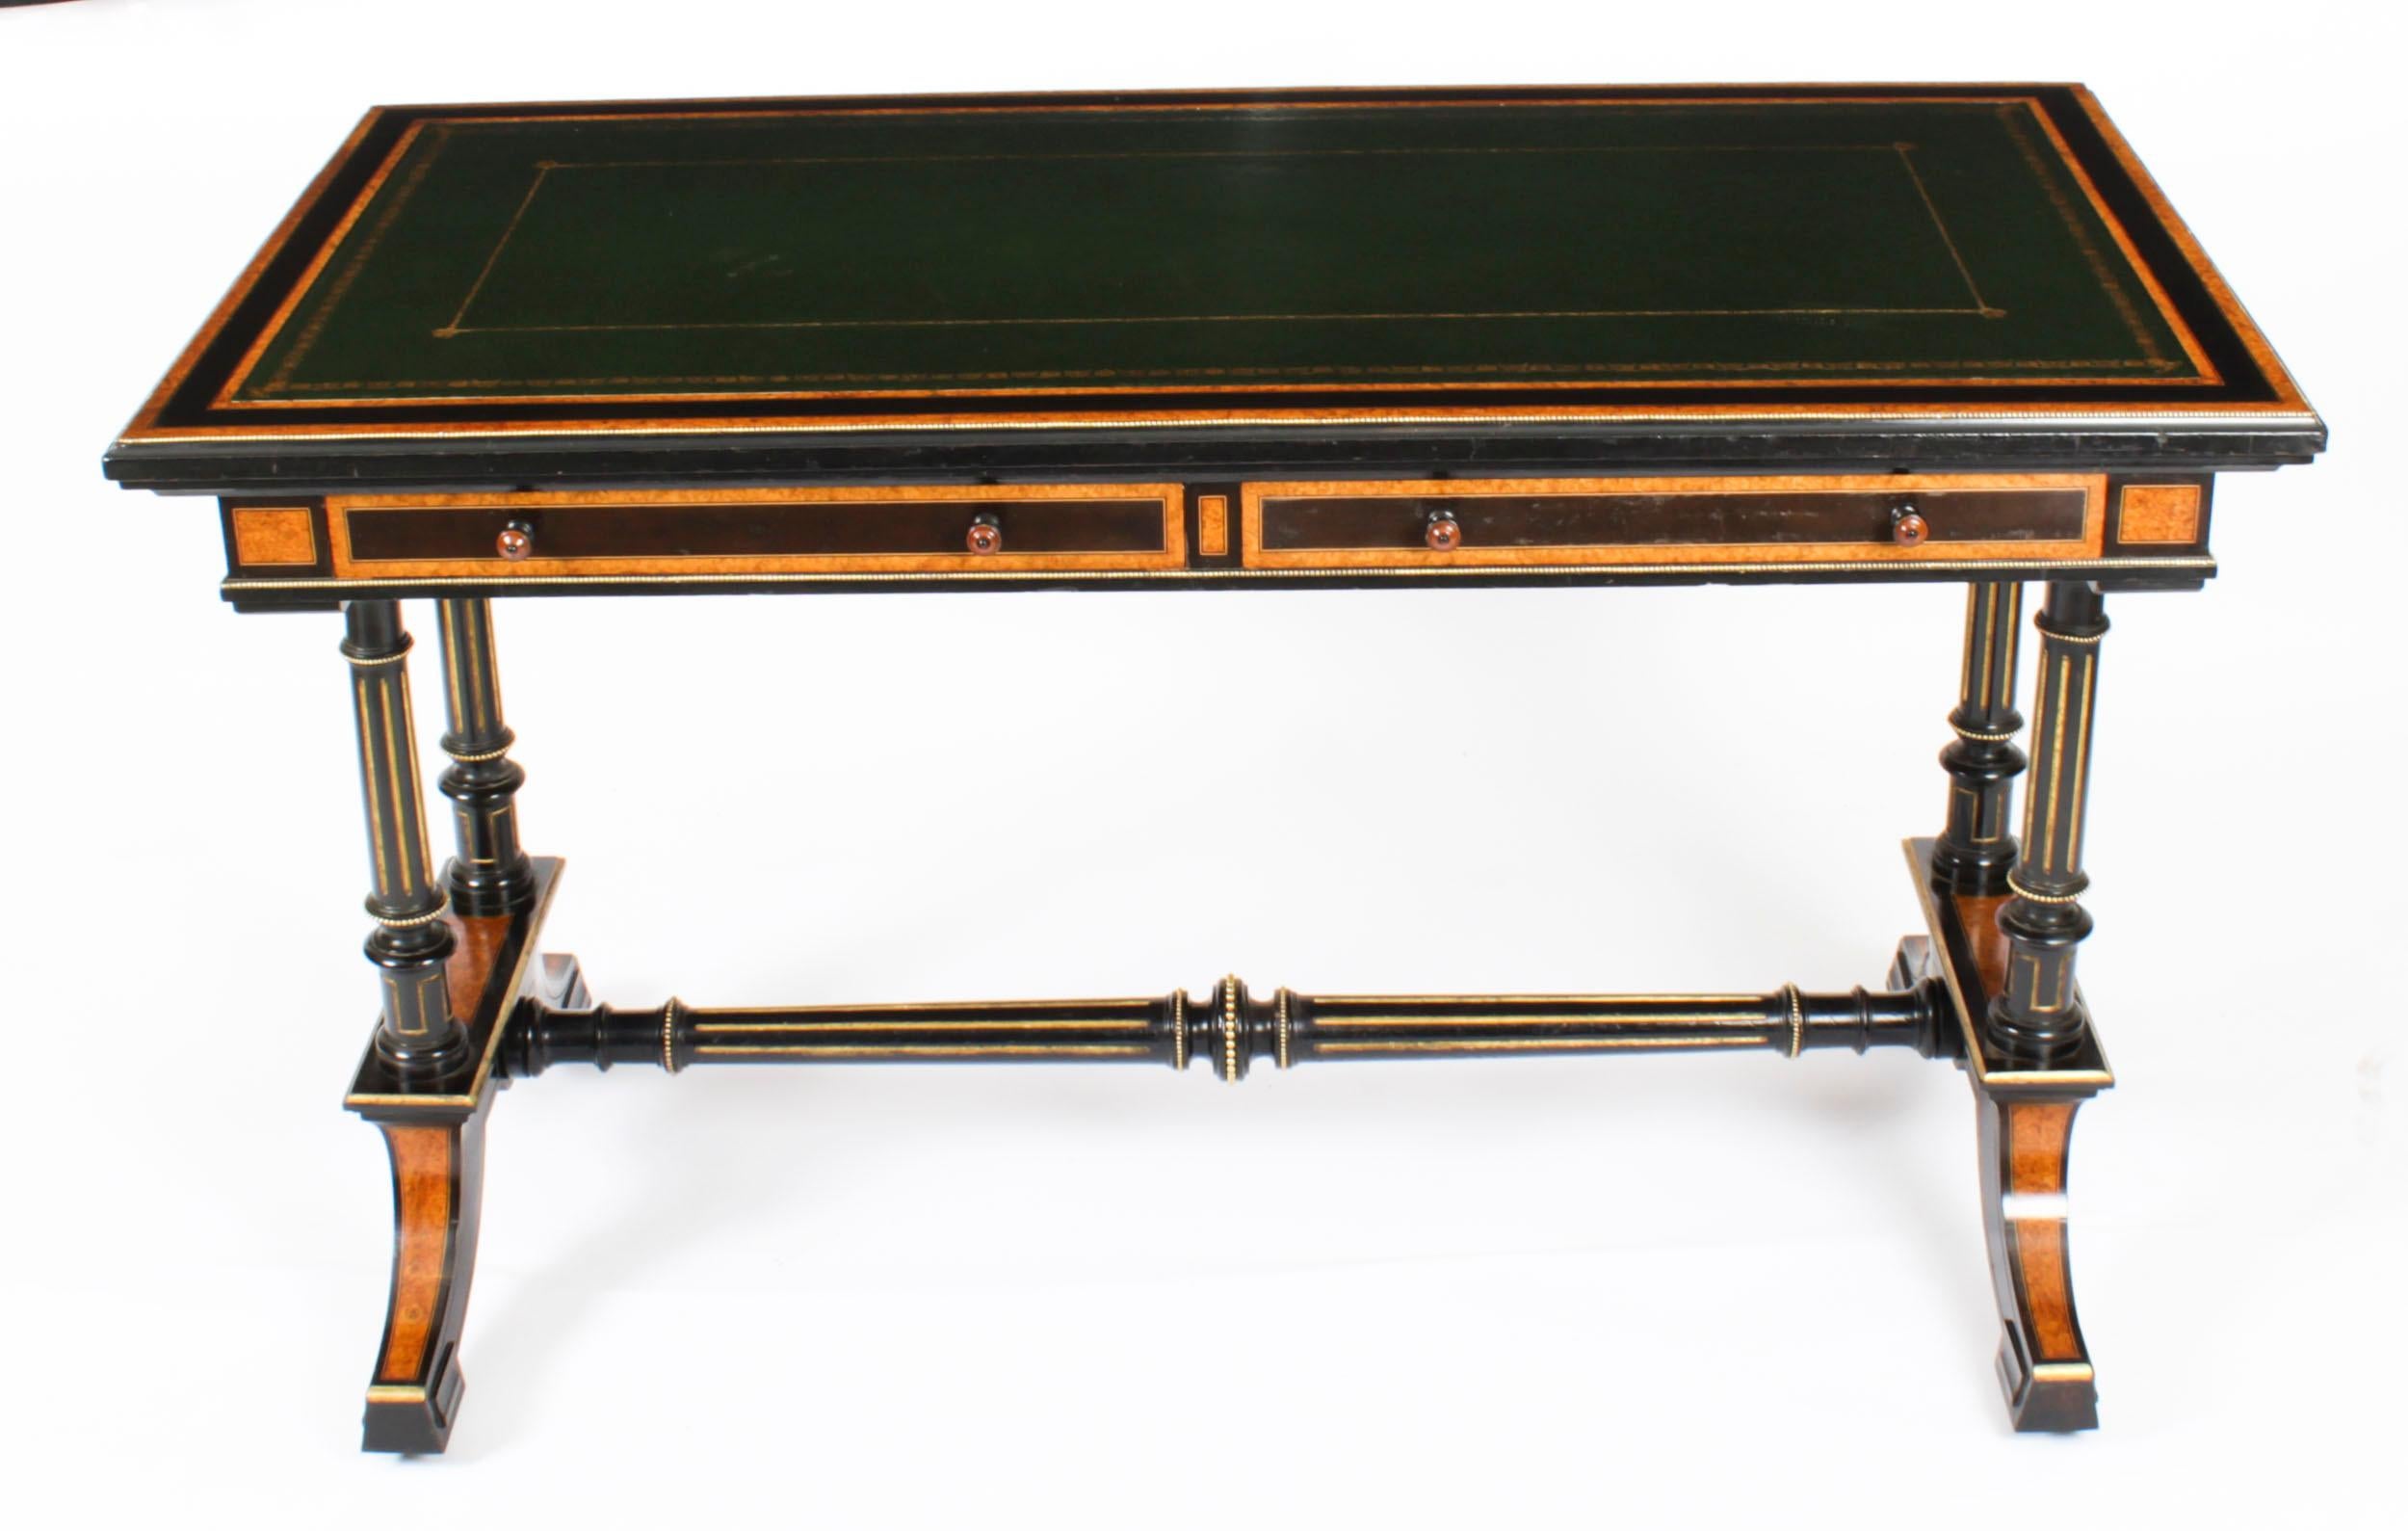 Dies ist eine elegante antike ästhetische Periode Wurzelahorn und ebonisiert Schreibtisch, gestempelt 'Edwards & Roberts' um 1870 in Datum.
 
Dieser elegante Schreibtisch ist aus schönstem Ahornholz gefertigt und mit Ebenholzbändern und